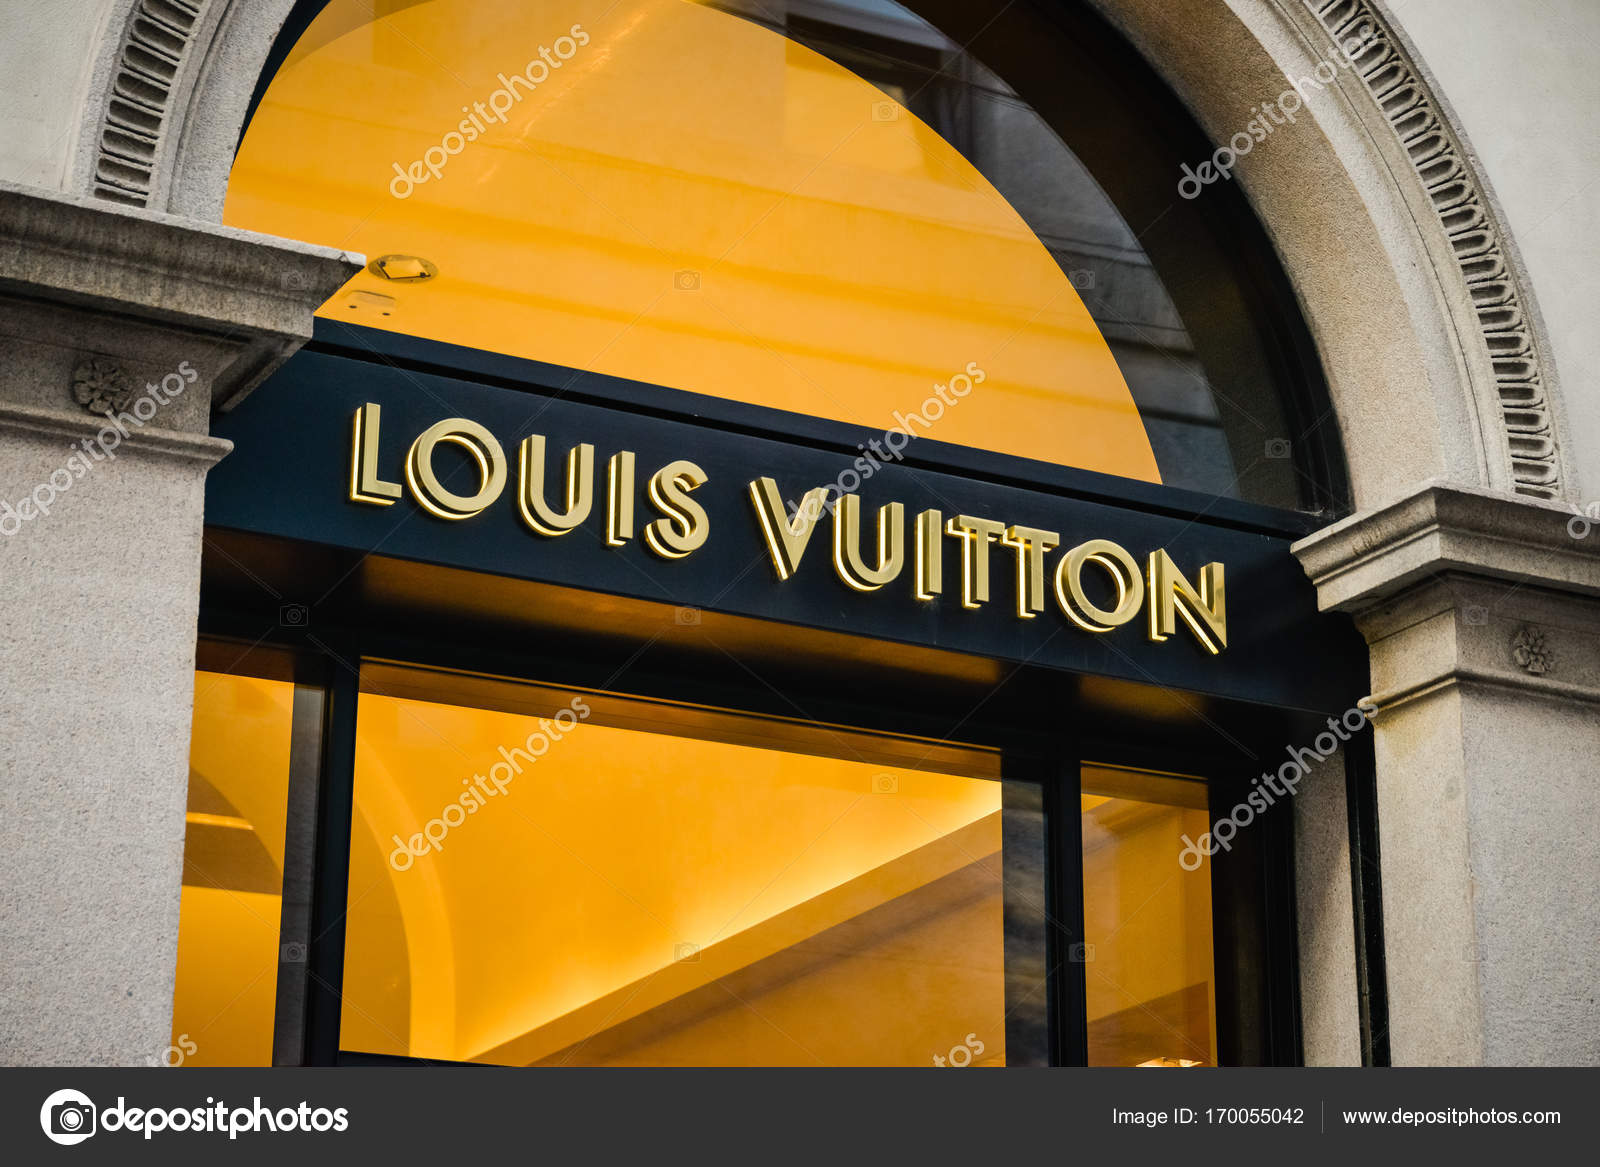 Milan, Italy - September 24, 2017: Louis Vuitton store in Milan